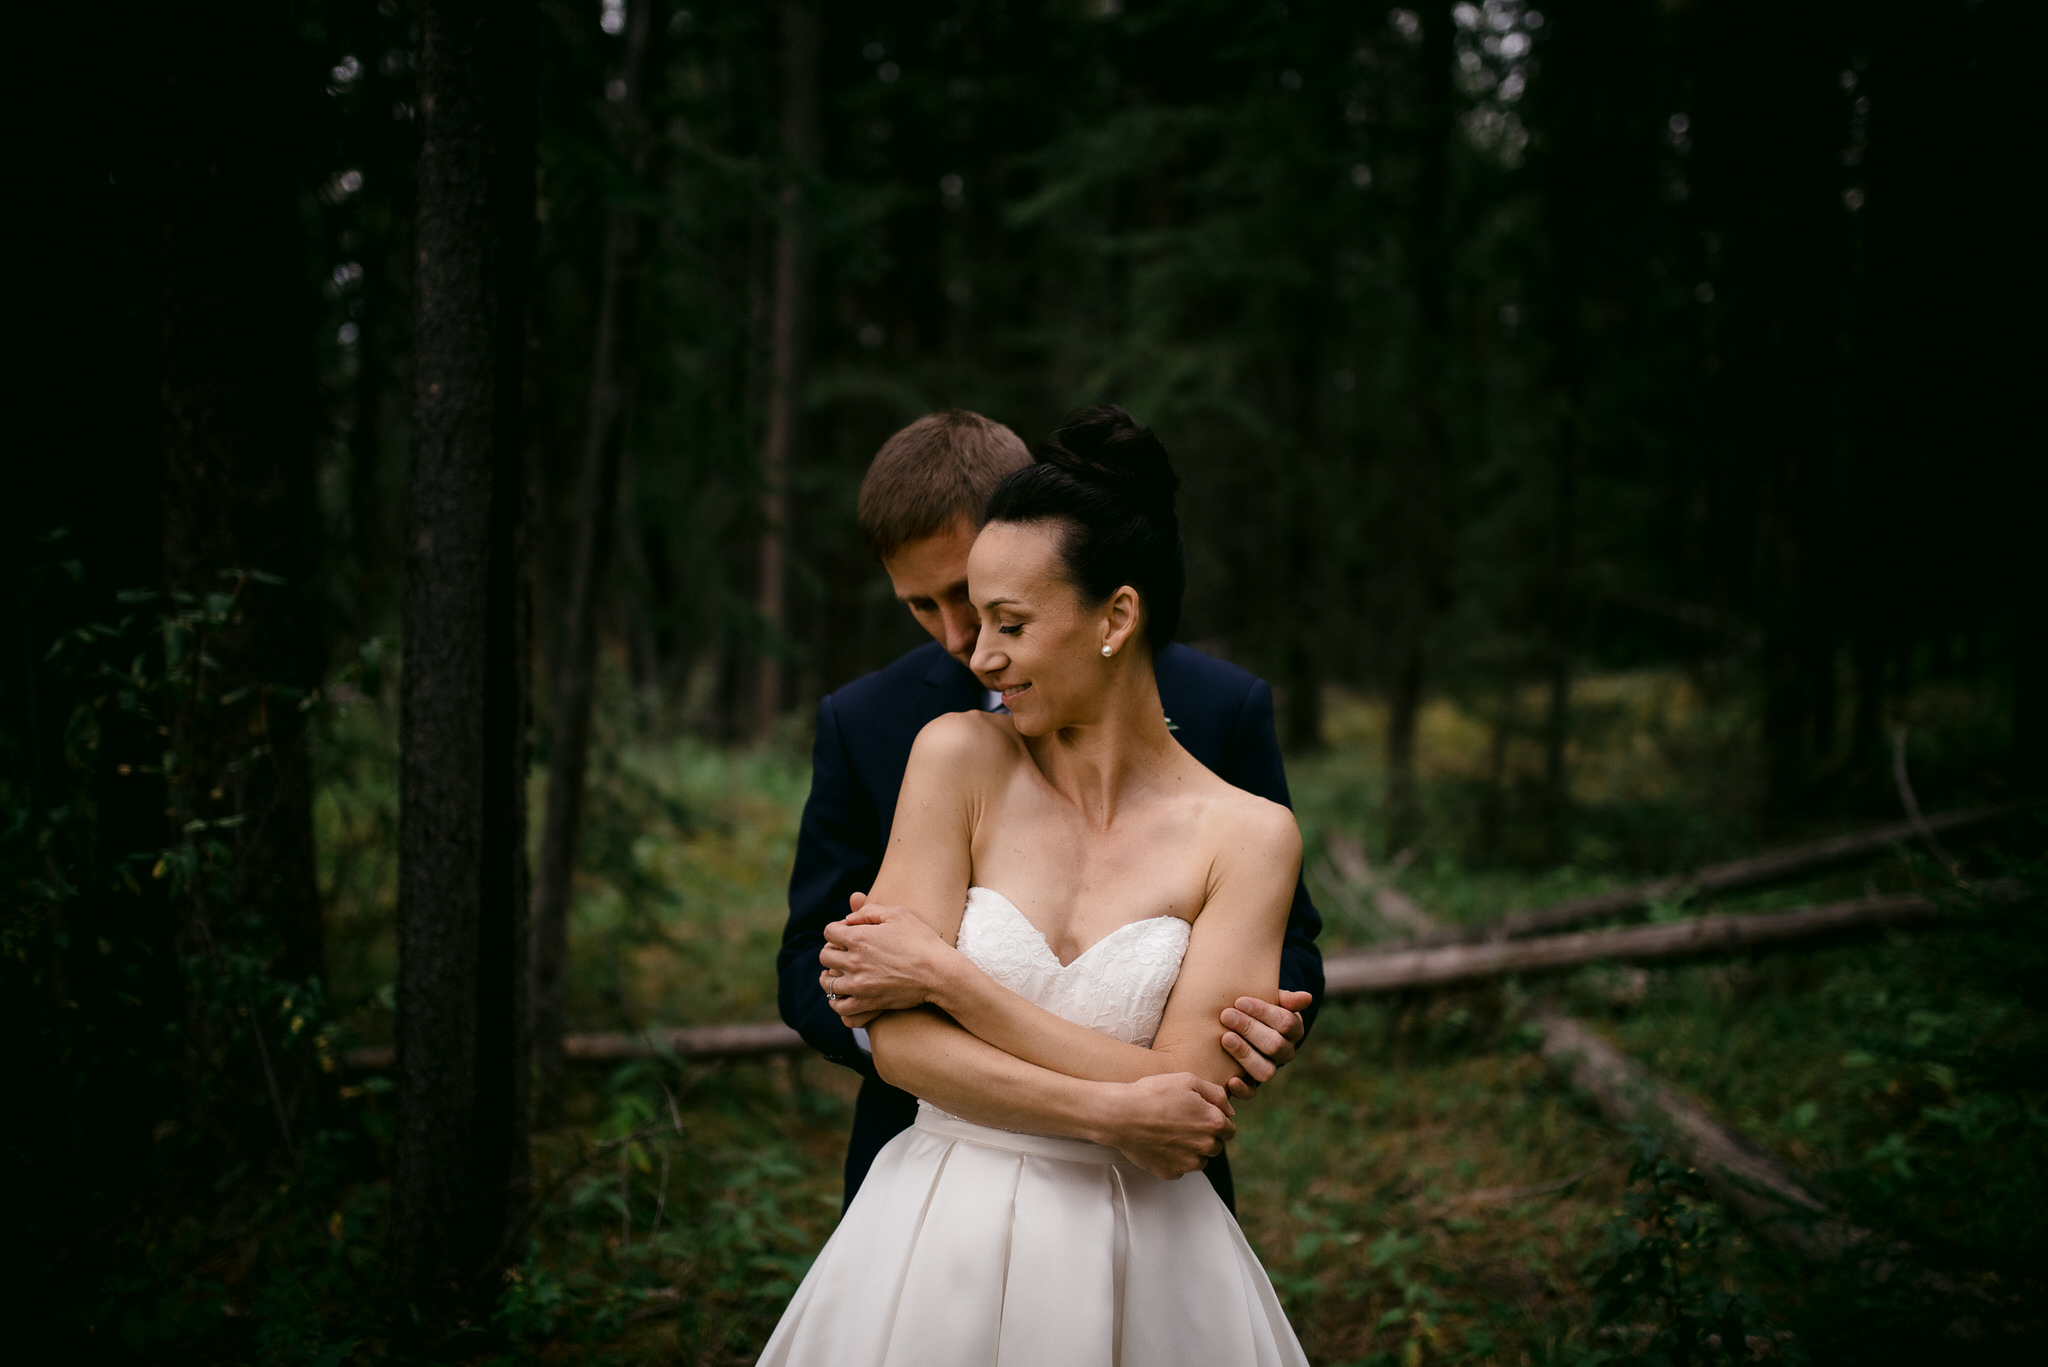 The Leddas Wedding Photography - Jenny & Troy: Canmore Wedding